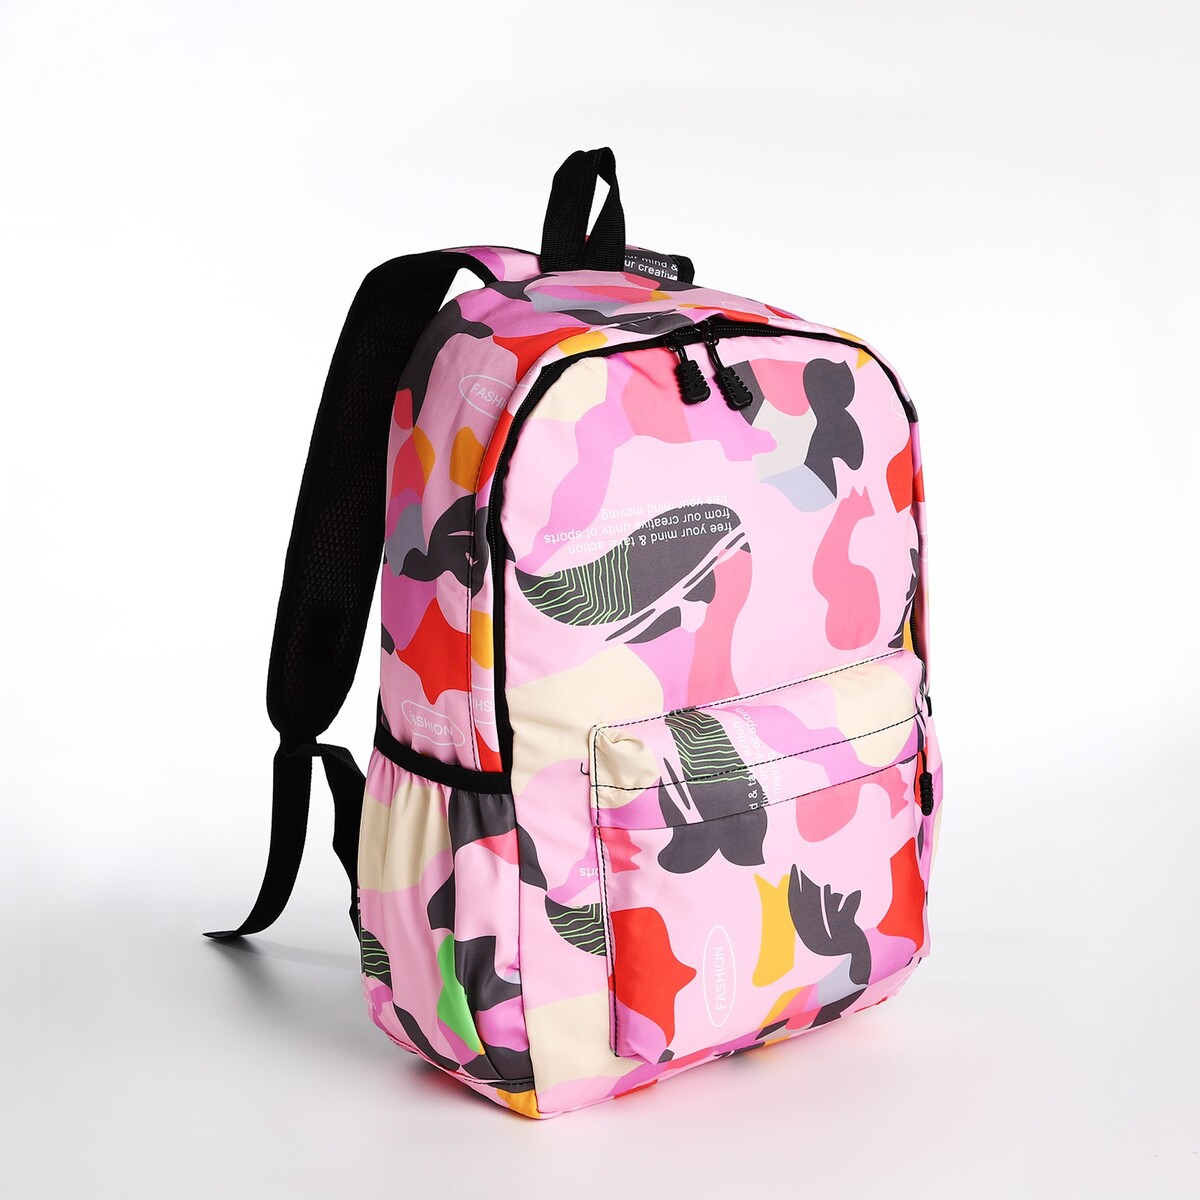 Рюкзак молодежный из текстиля, 3 кармана, цвет розовый рюкзак молодежный из текстиля 3 кармана белый розовый